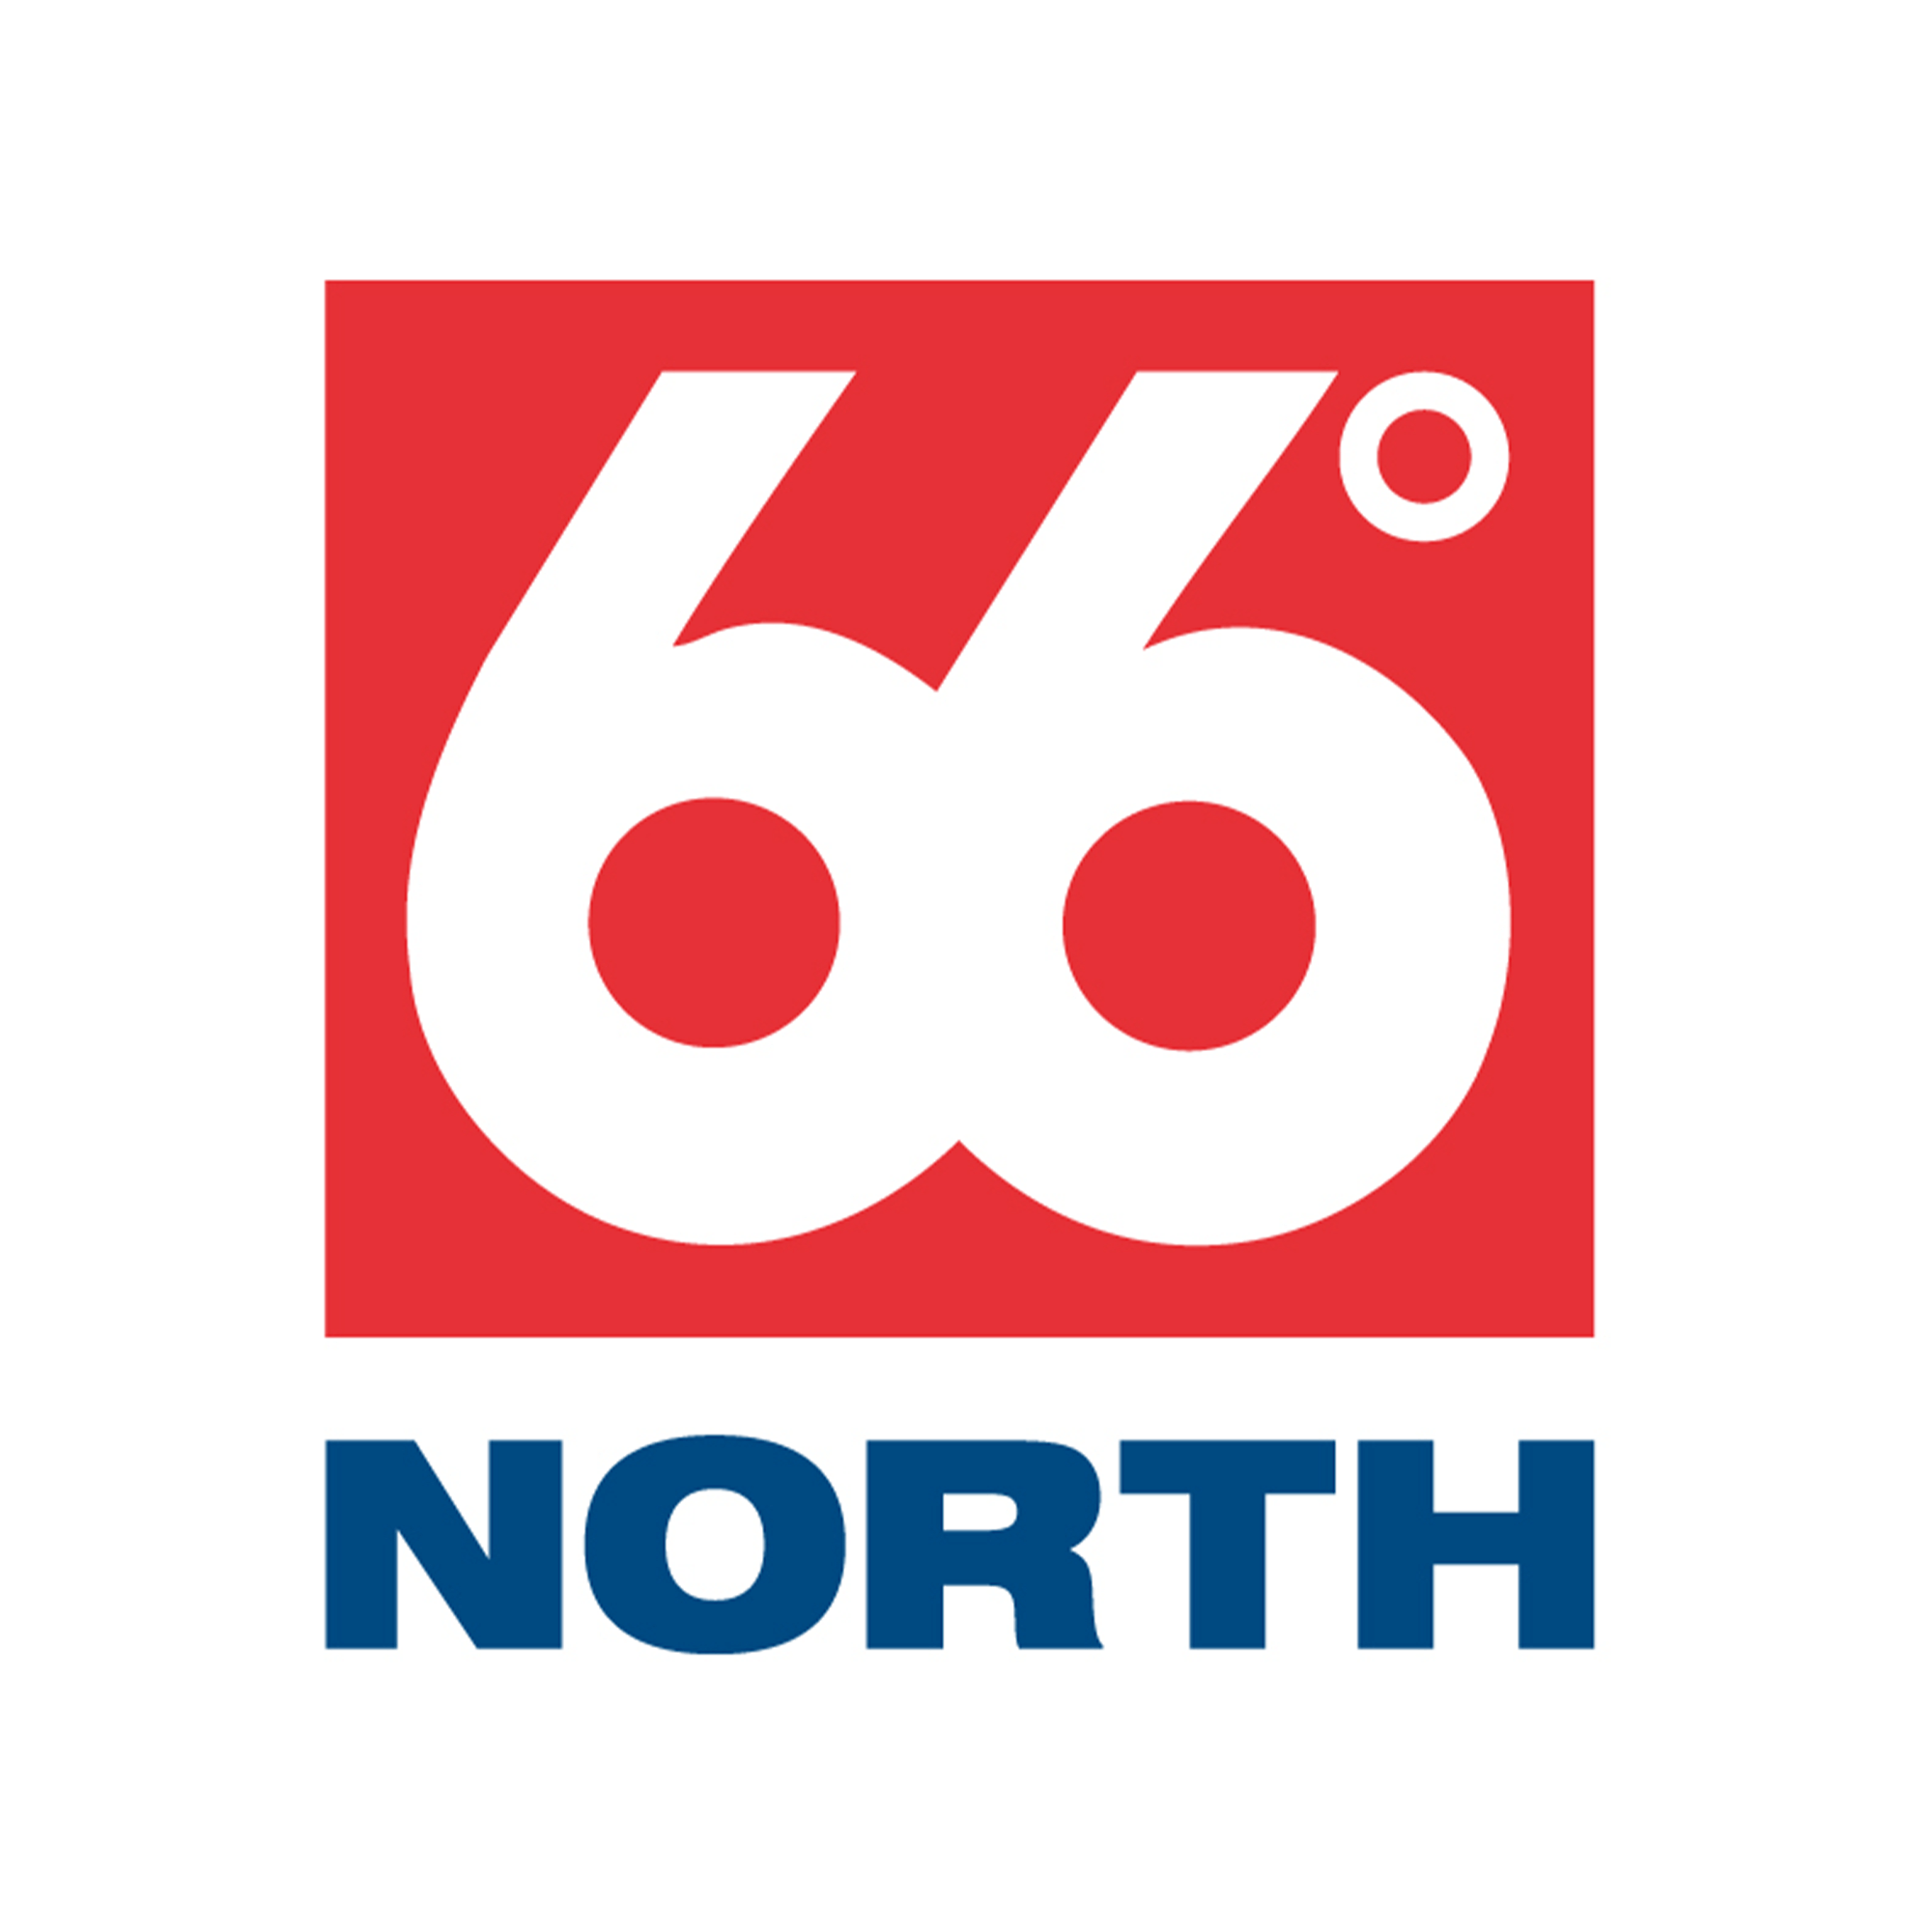 66°North